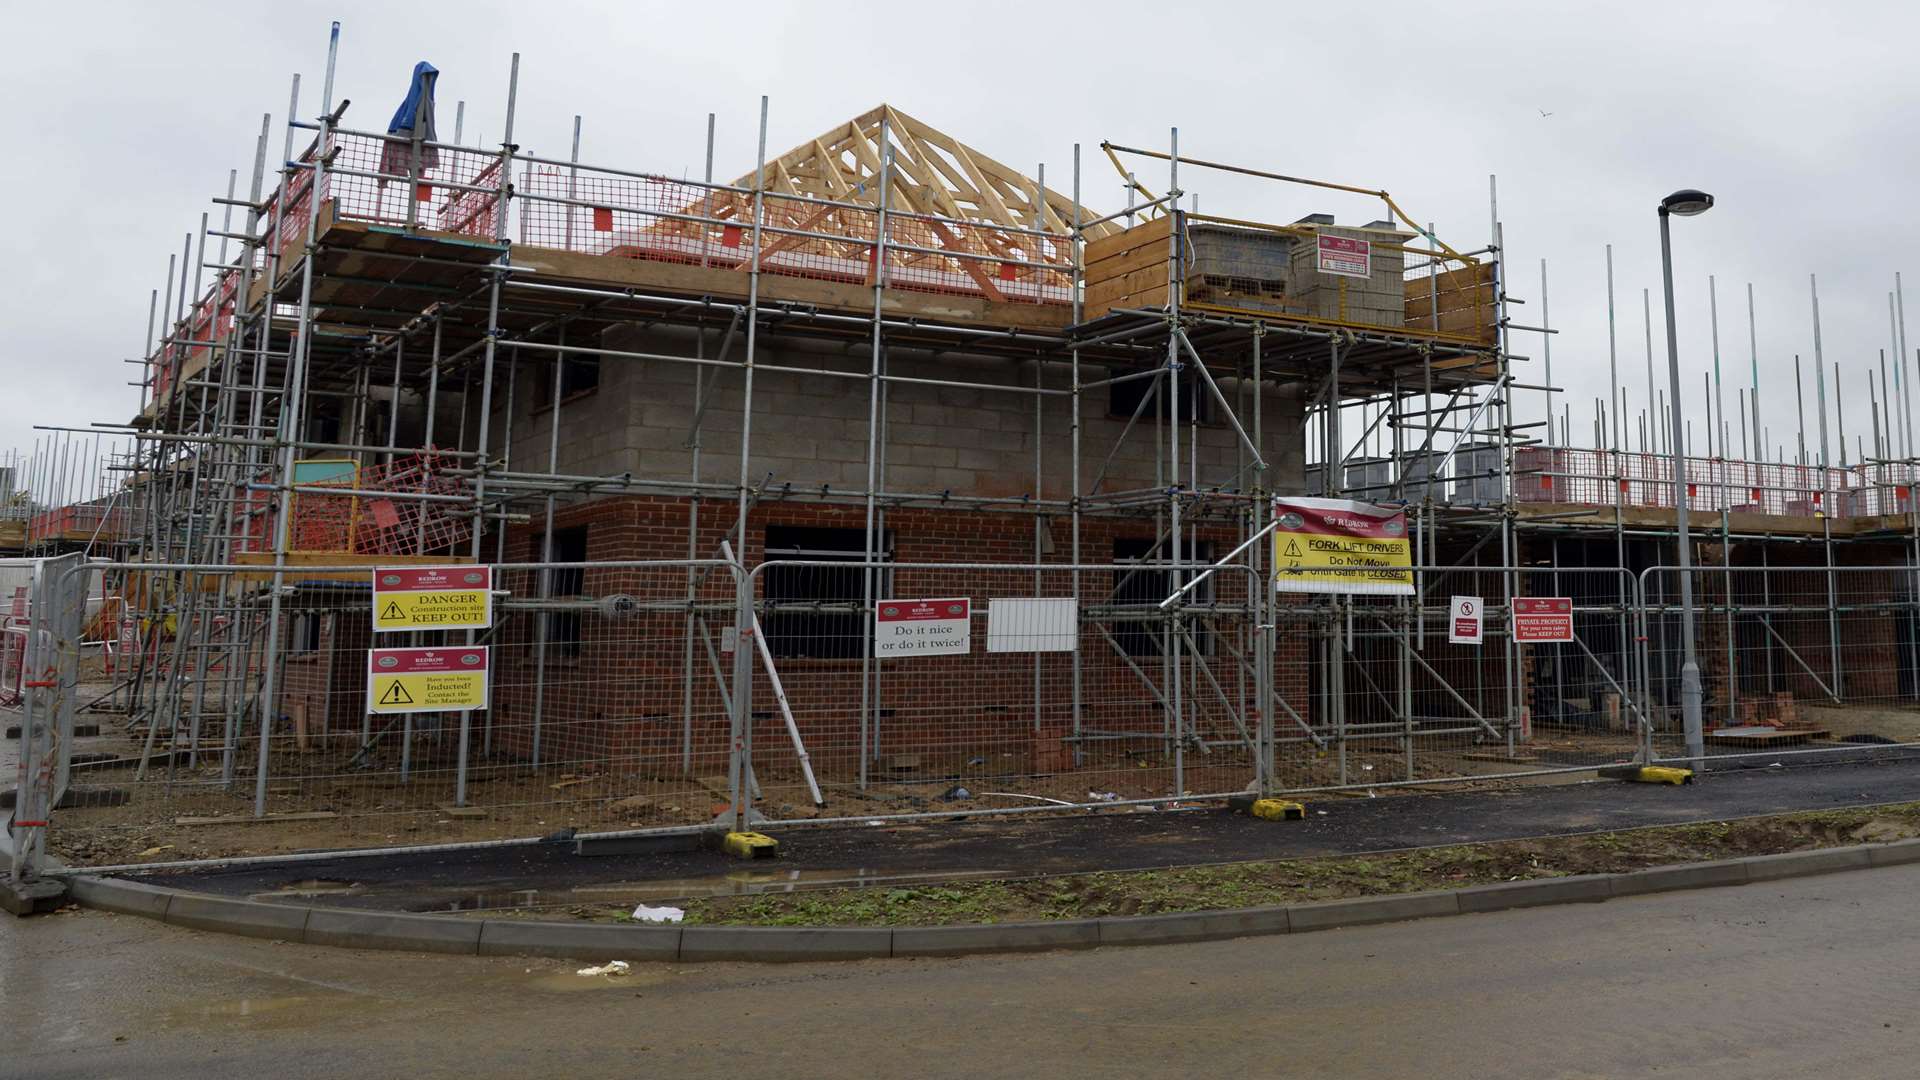 Building work underway at Archers Park, Sittingbourne's newest housing development